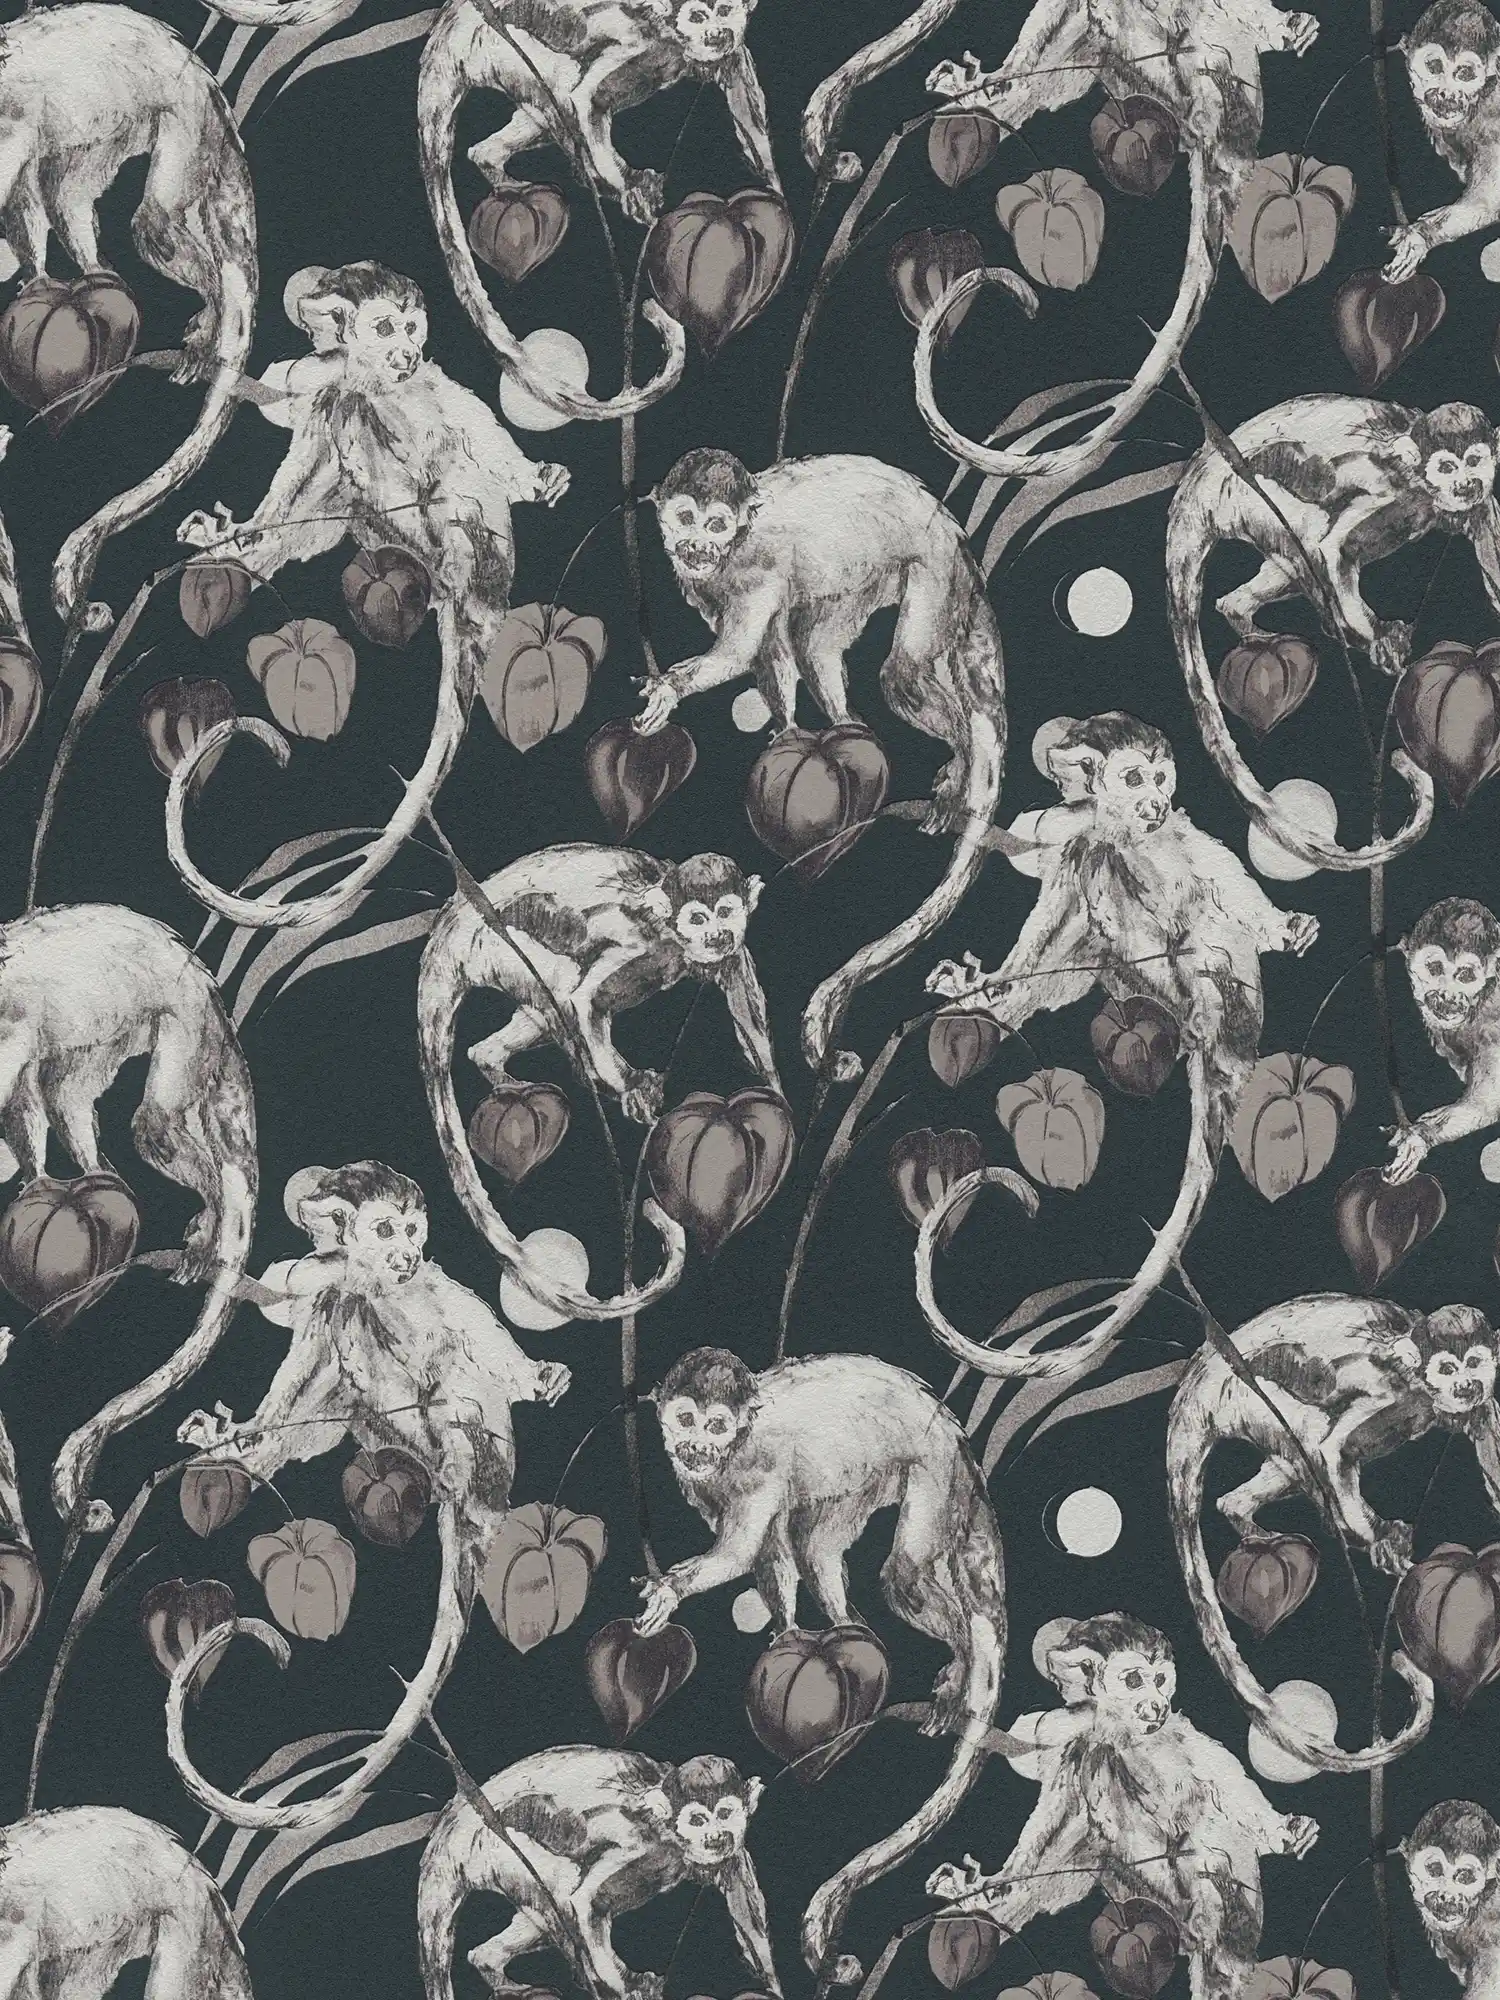         Papel pintado no tejido oscuro diseño monos y hojas de MICHALSKY
    